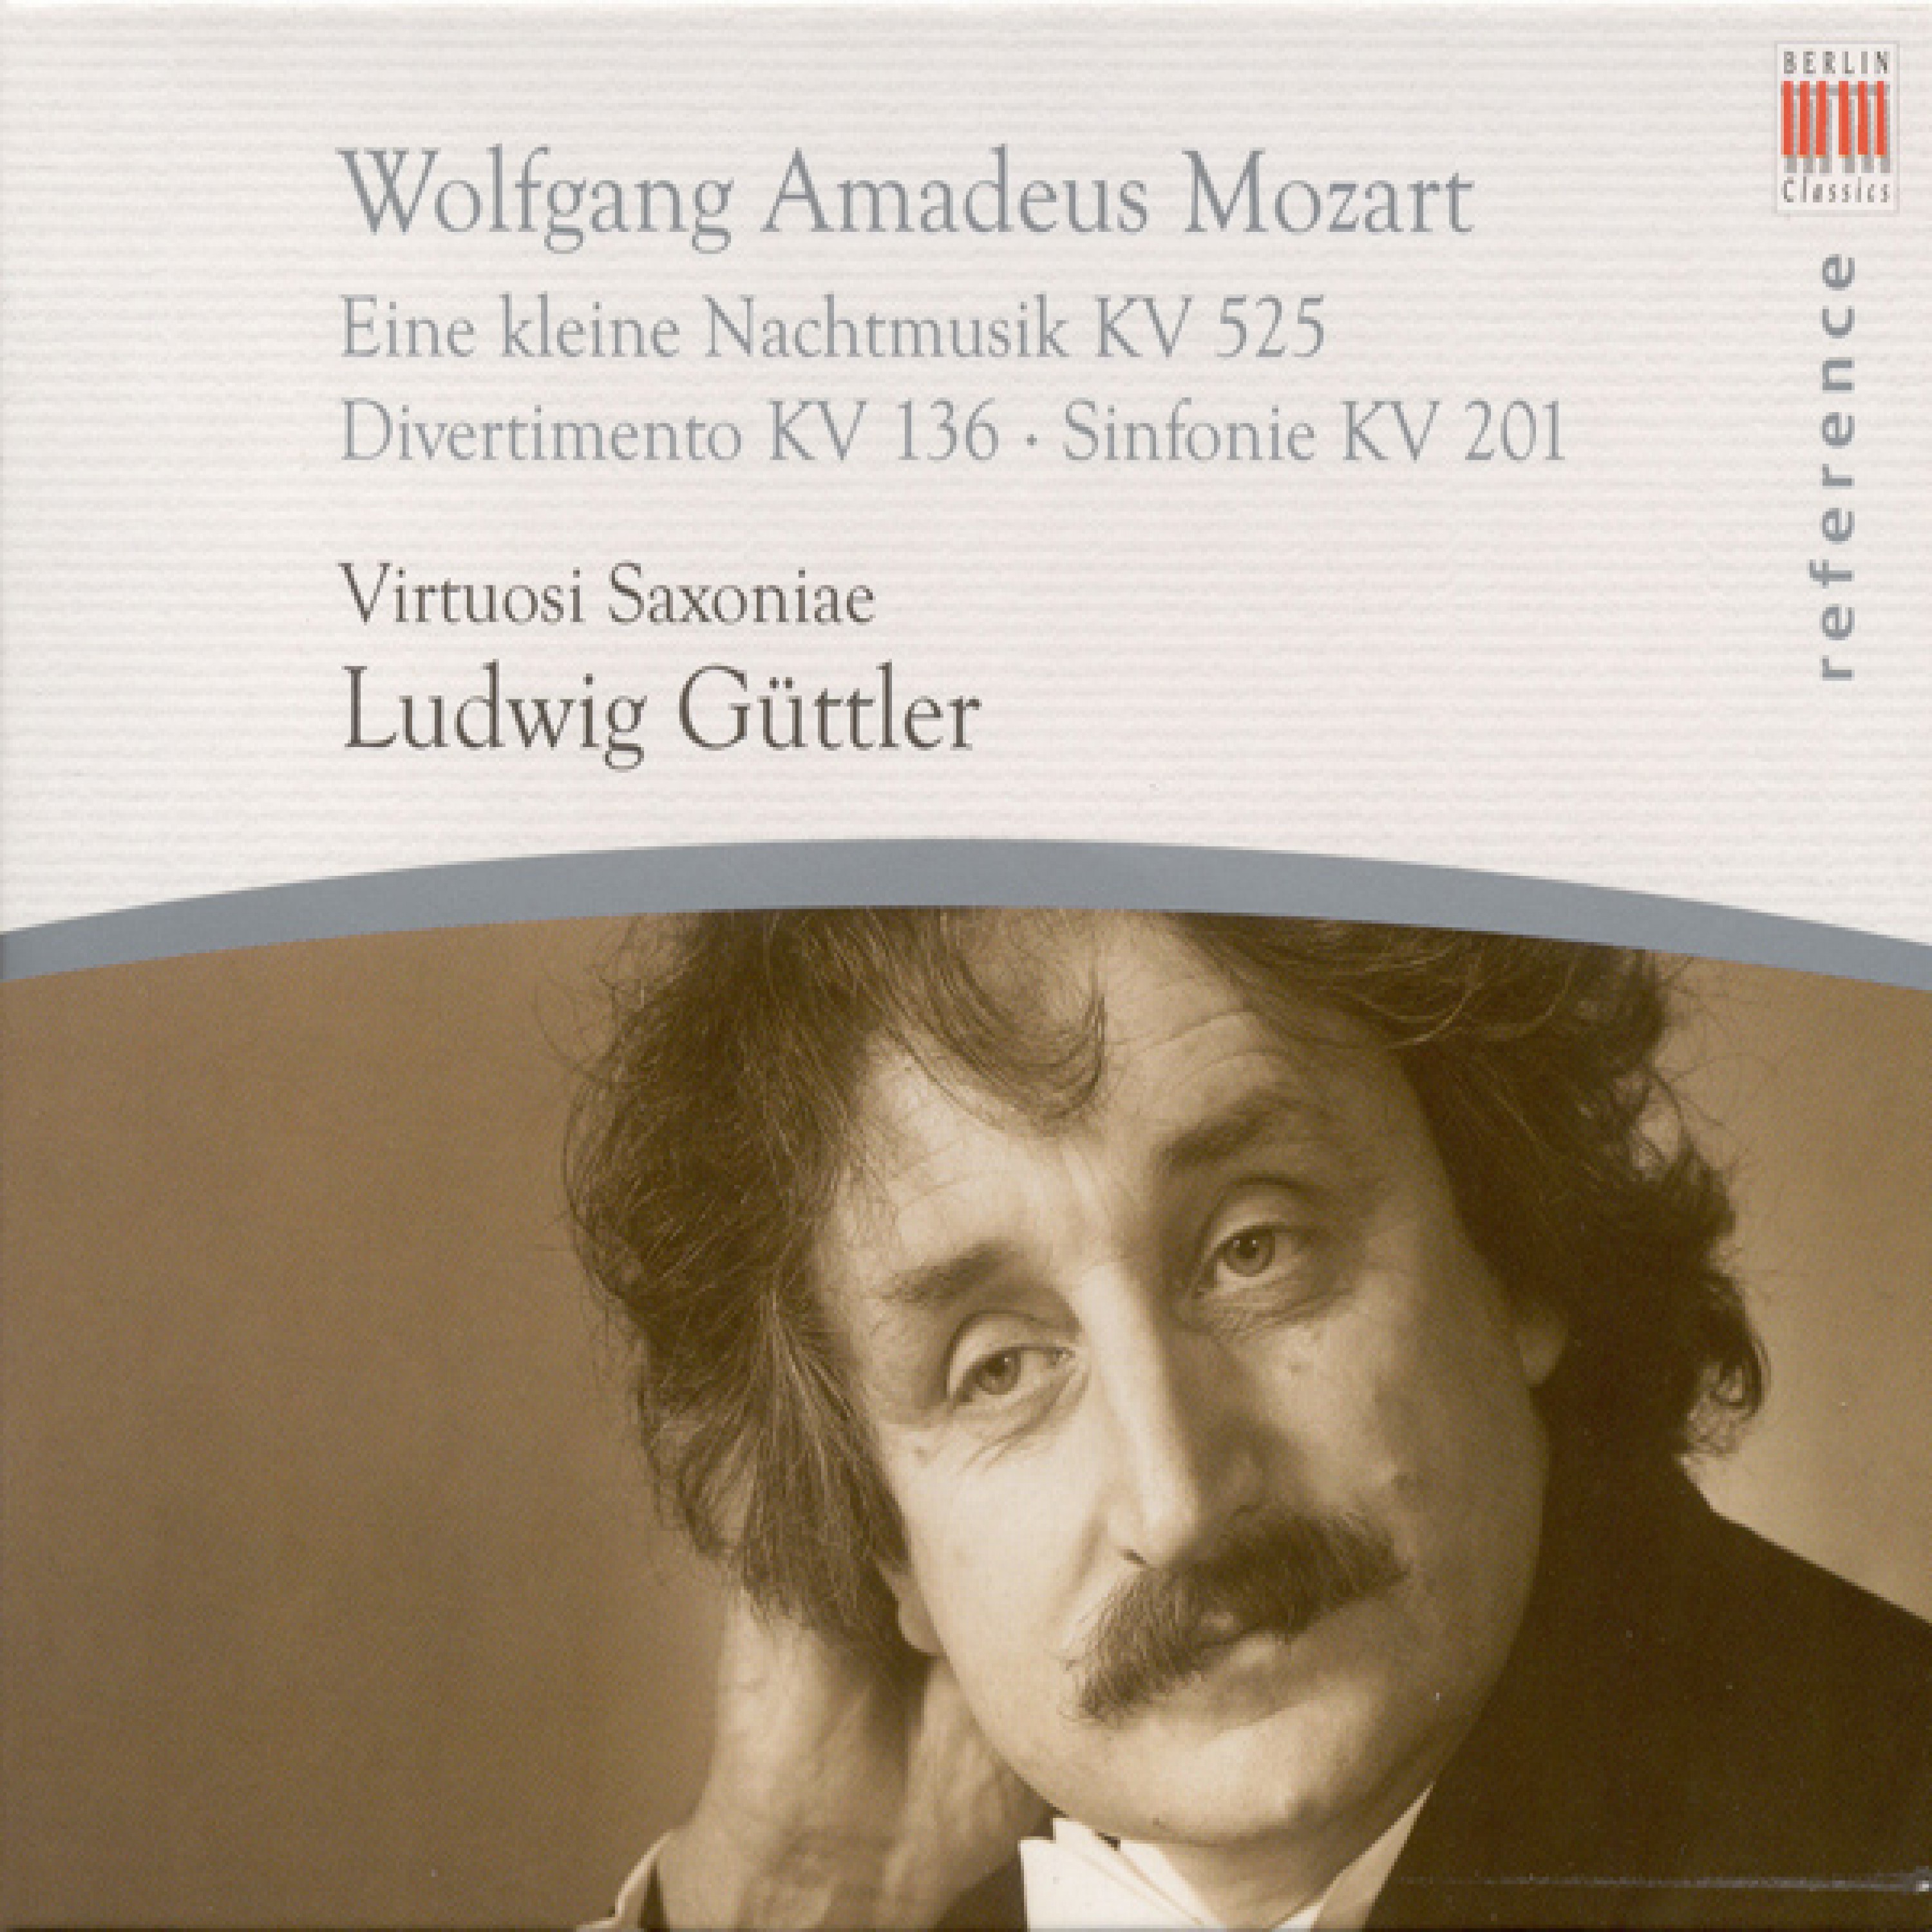 "Eine kleine Nachtmusik" Serenade No. 13 in G Major, K. 525: I. Allegro